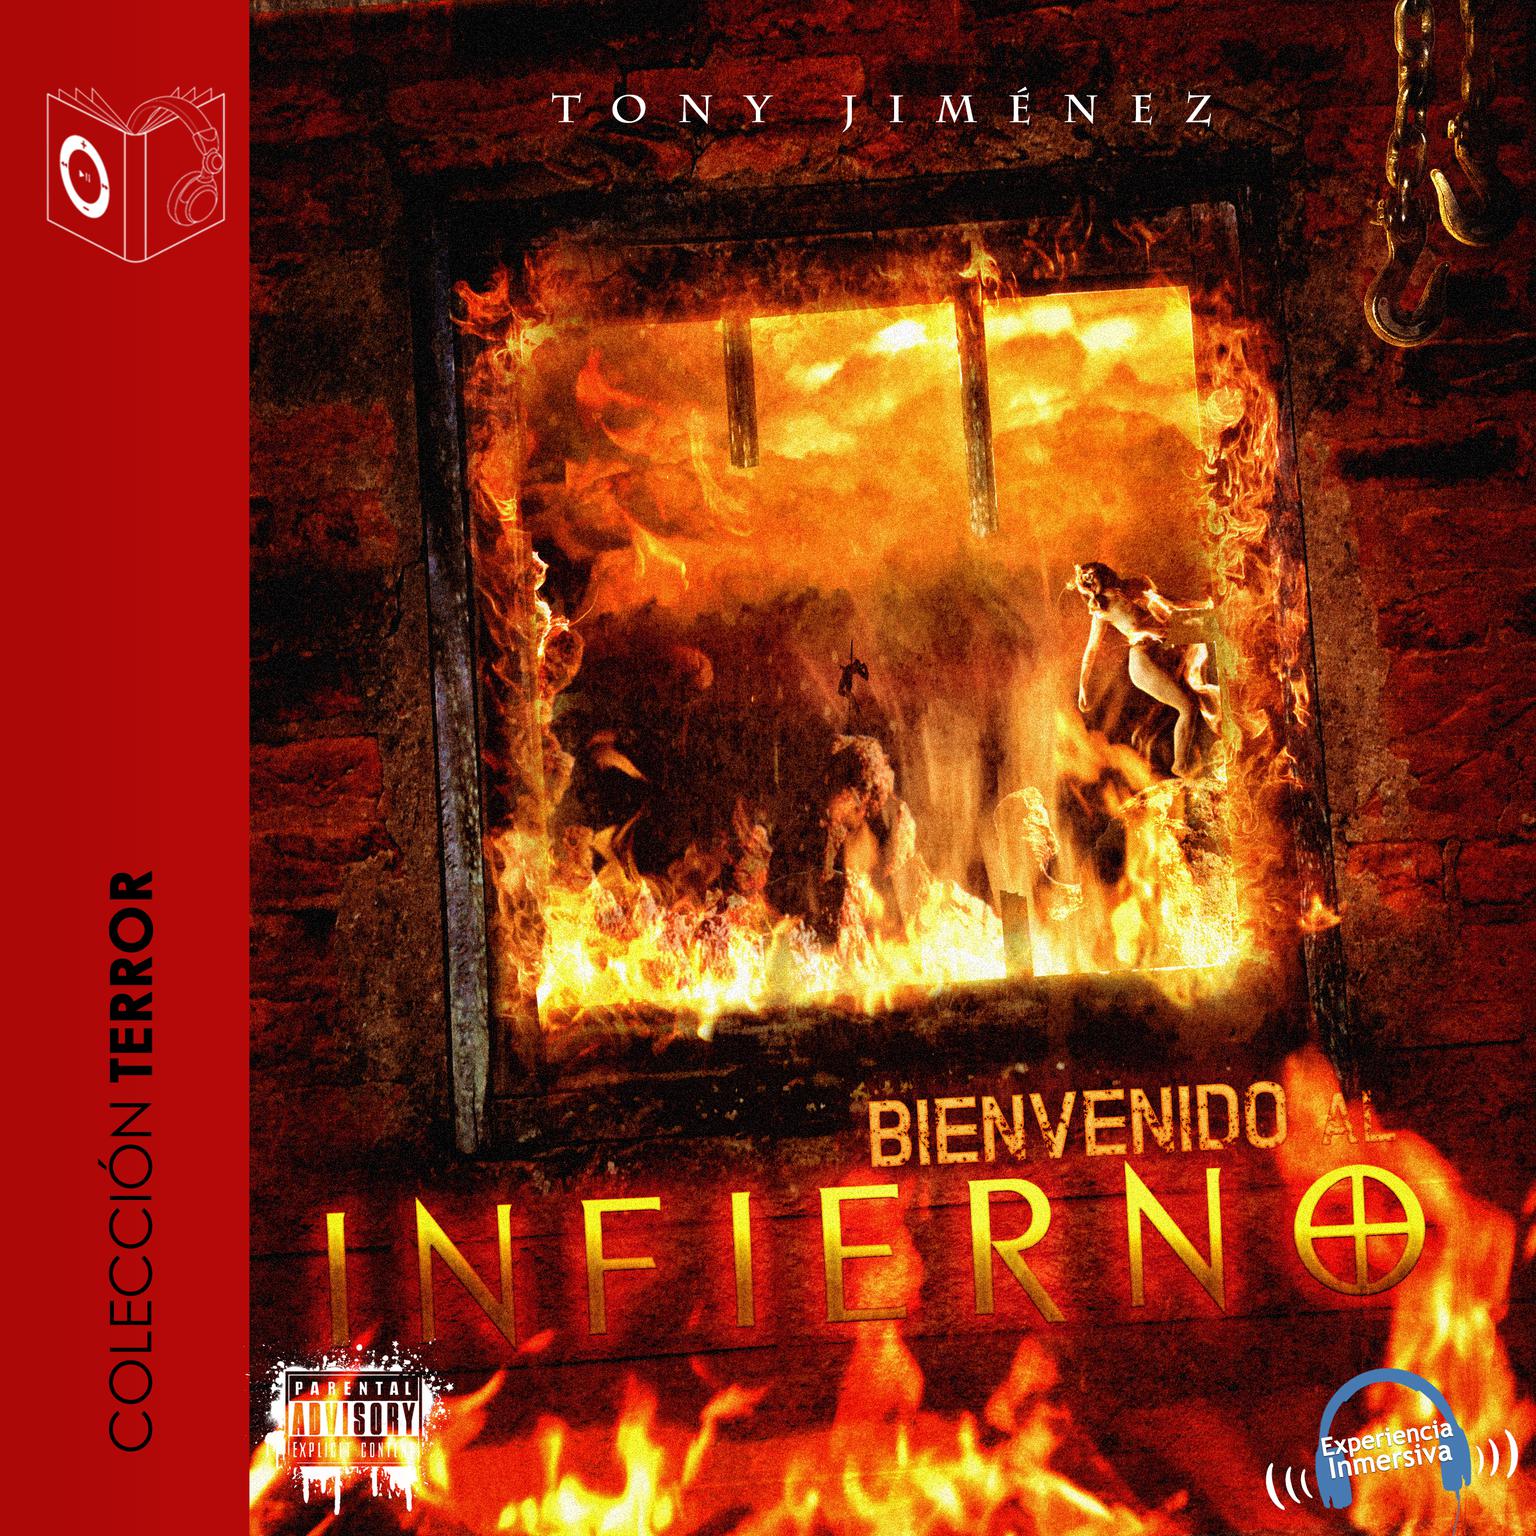 Bienvenido al infierno Audiobook, by Tony Jimenez